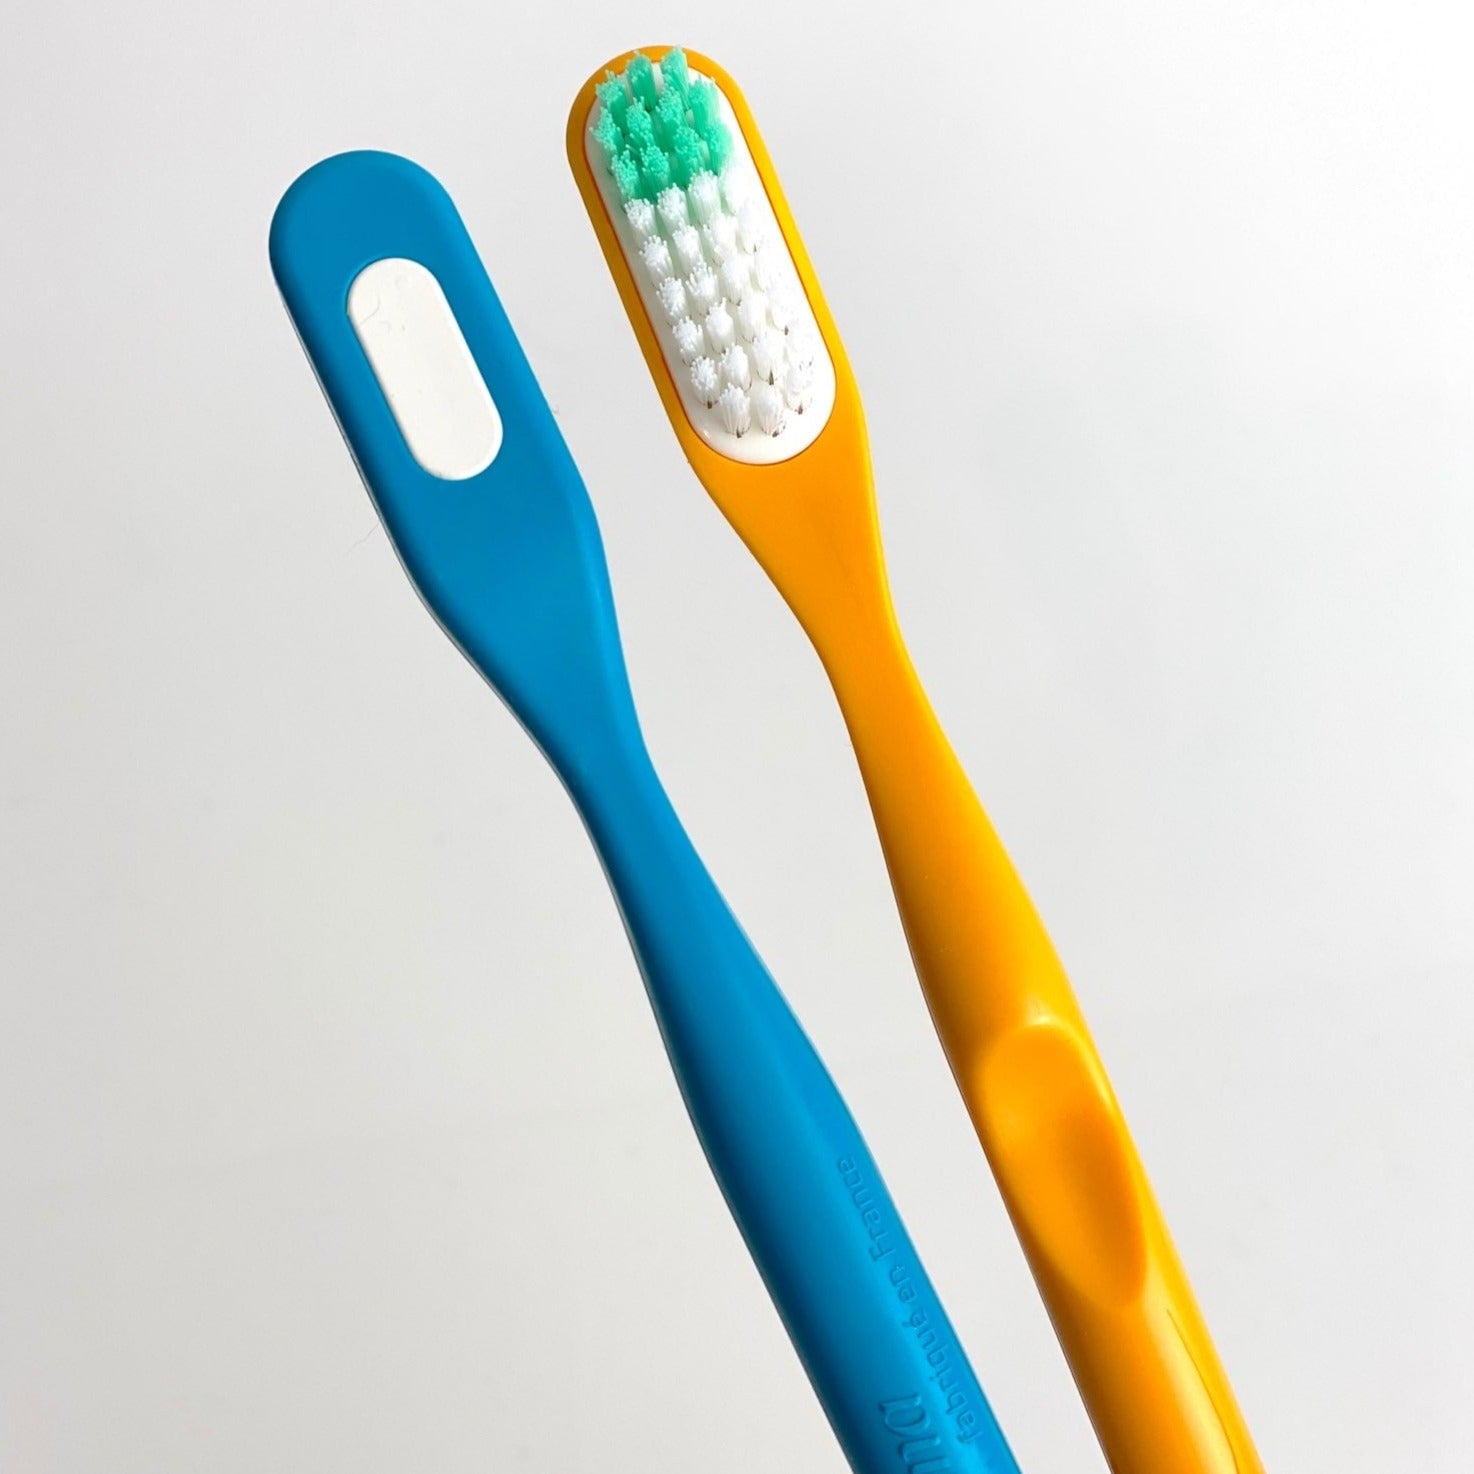 Cepillos dental de plástico BIO con cabezal intercambiable, Lamazuna (sin cabezal)